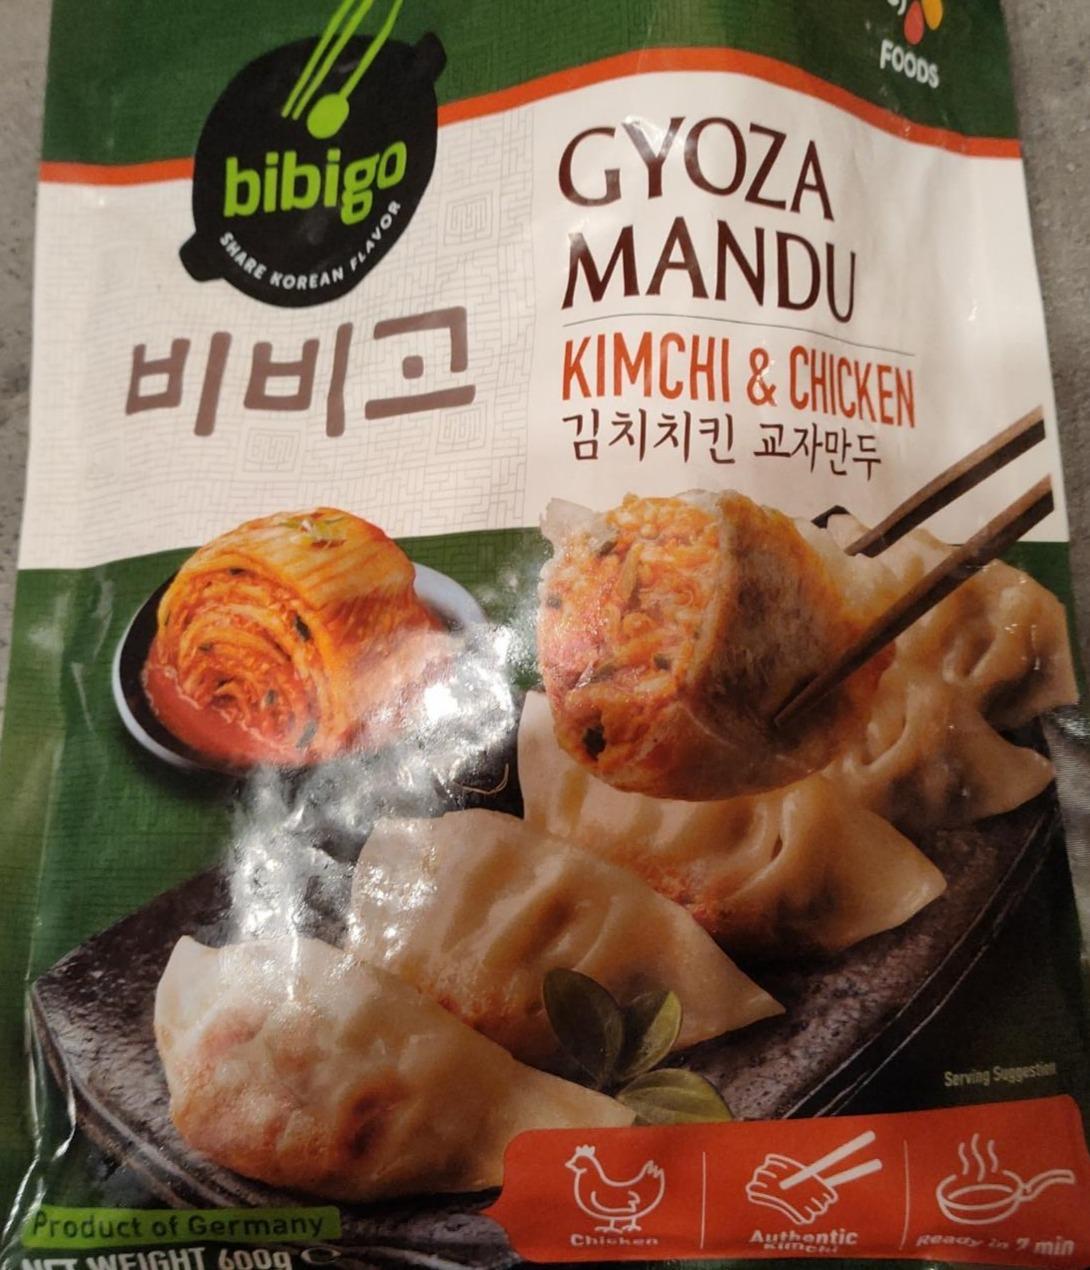 Fotografie - Gyoza mandu kimchi & chicken Bibigo